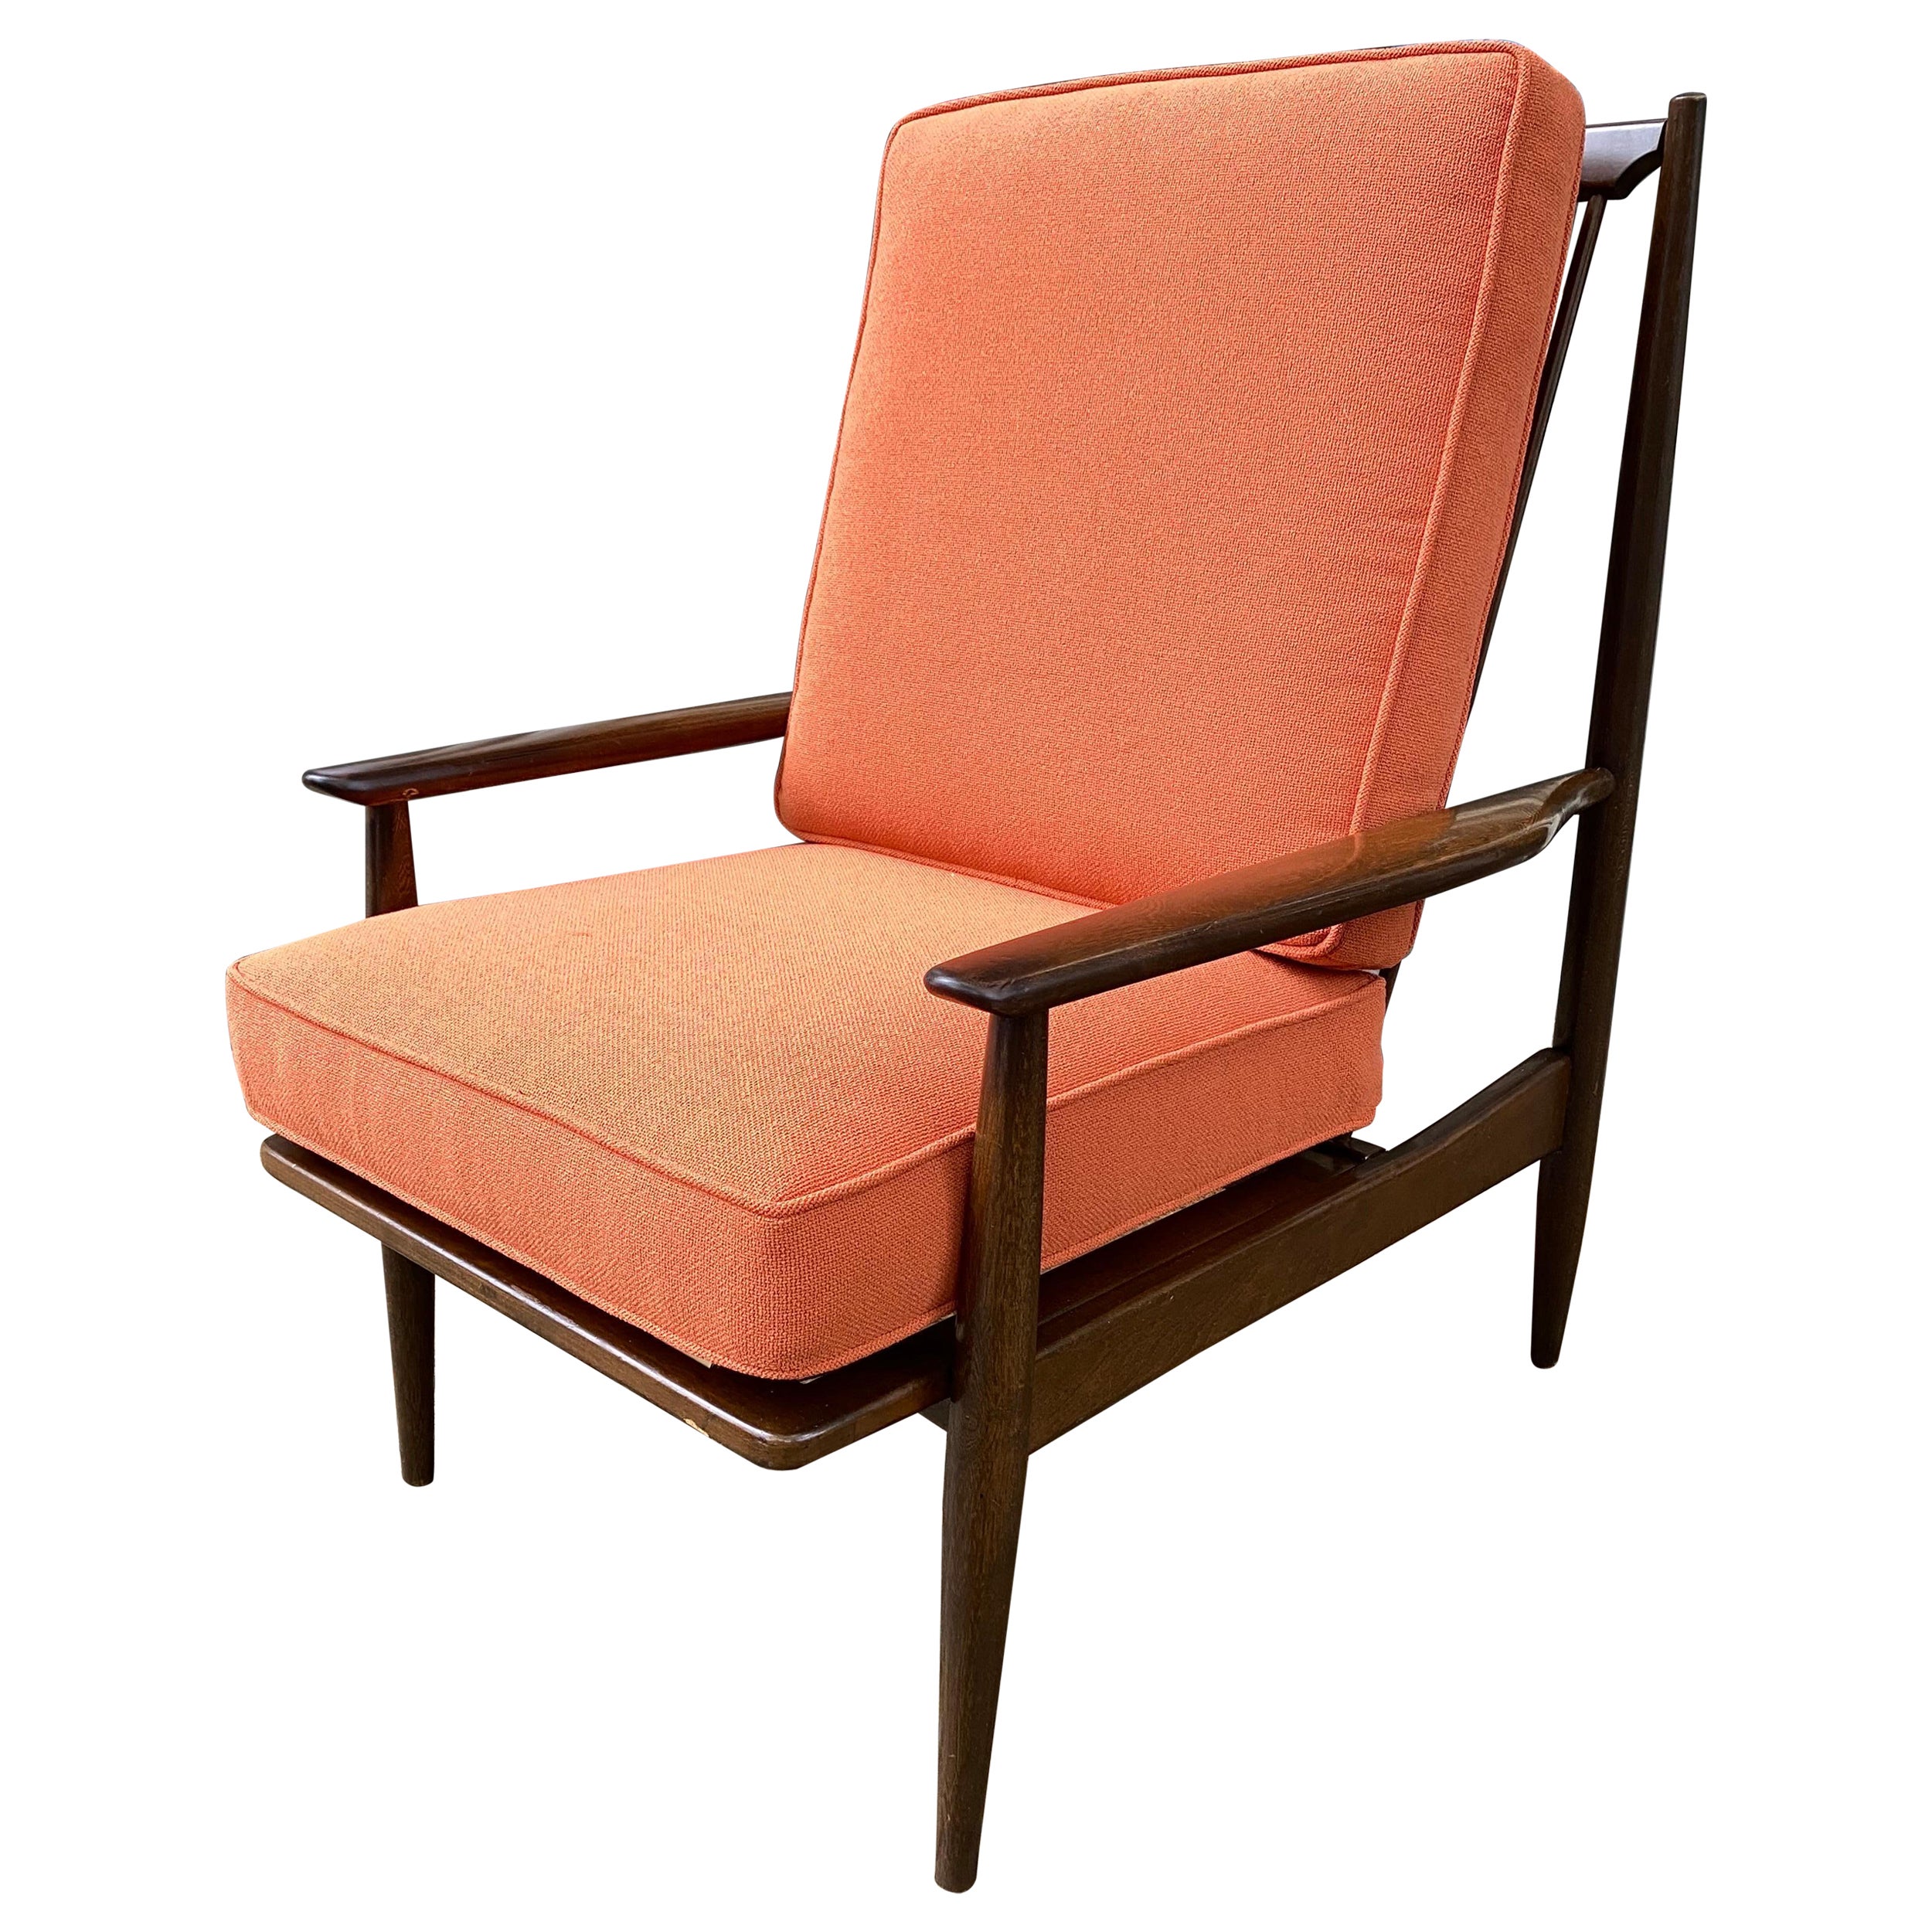 Offener Sessel mit hoher Rückenlehne, 1960er Jahre, möglicherweise Selig